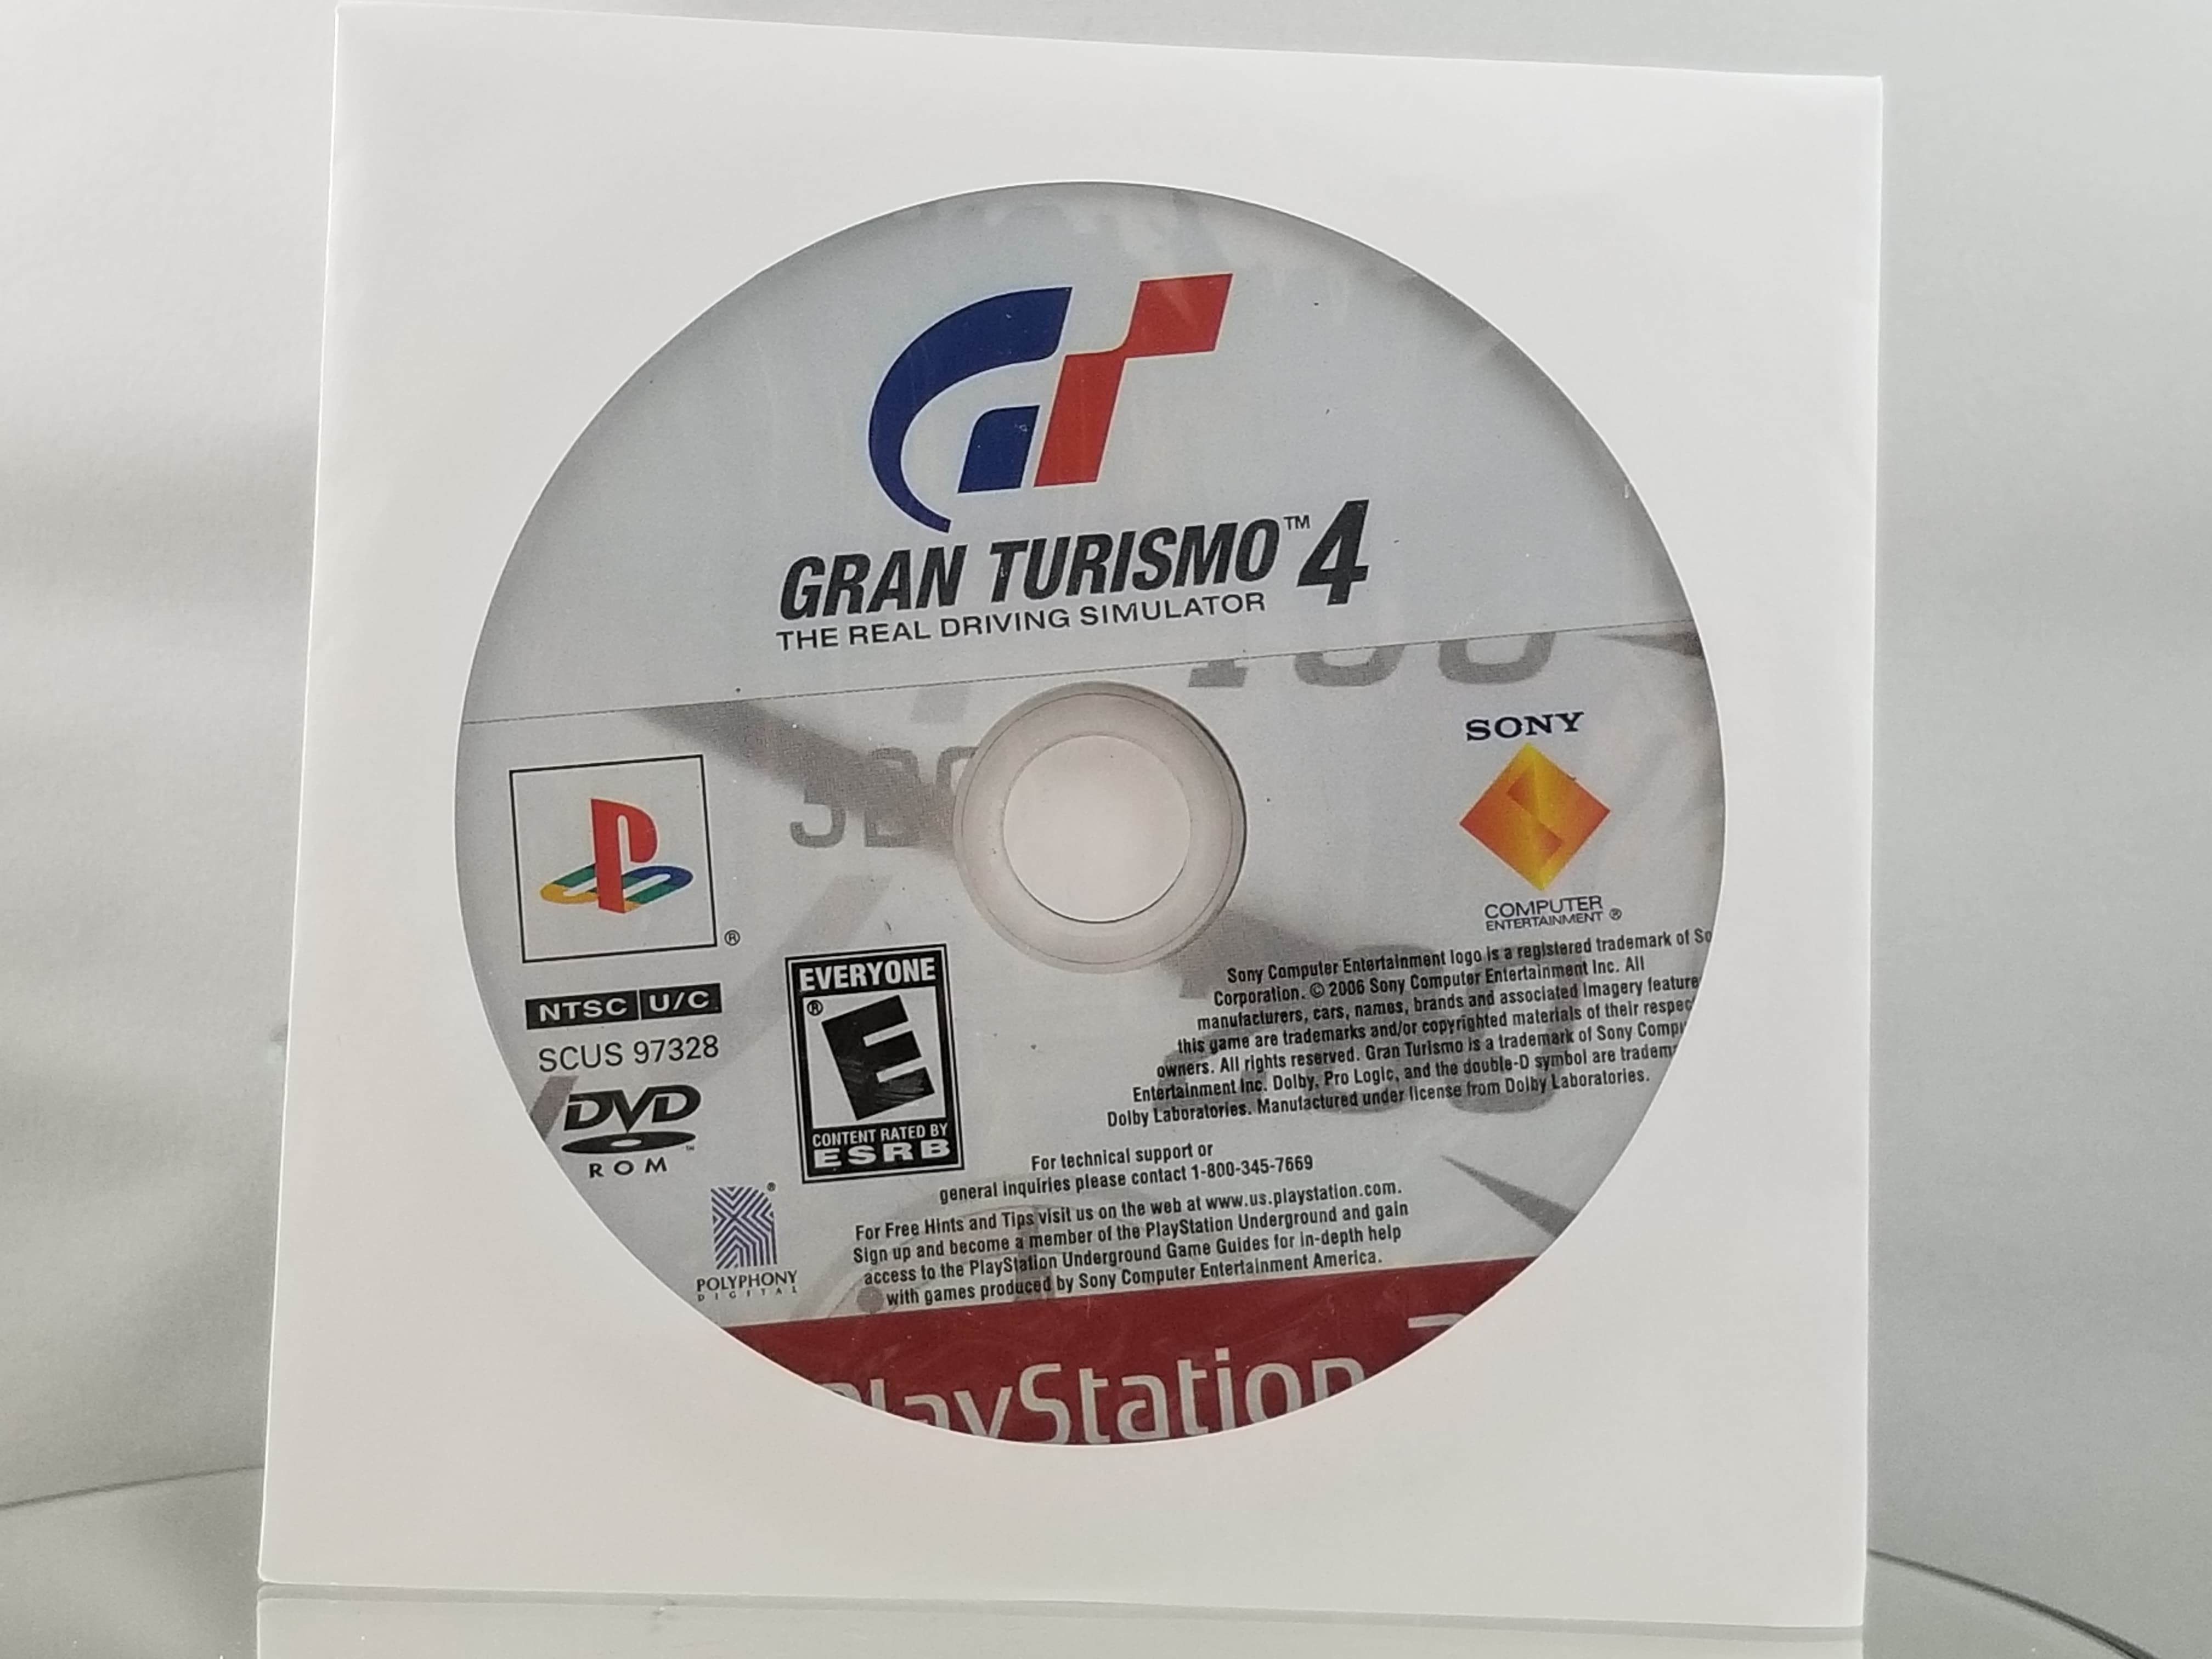 Playstation 2 Gran Turismo 4 - Geek-Is-Us